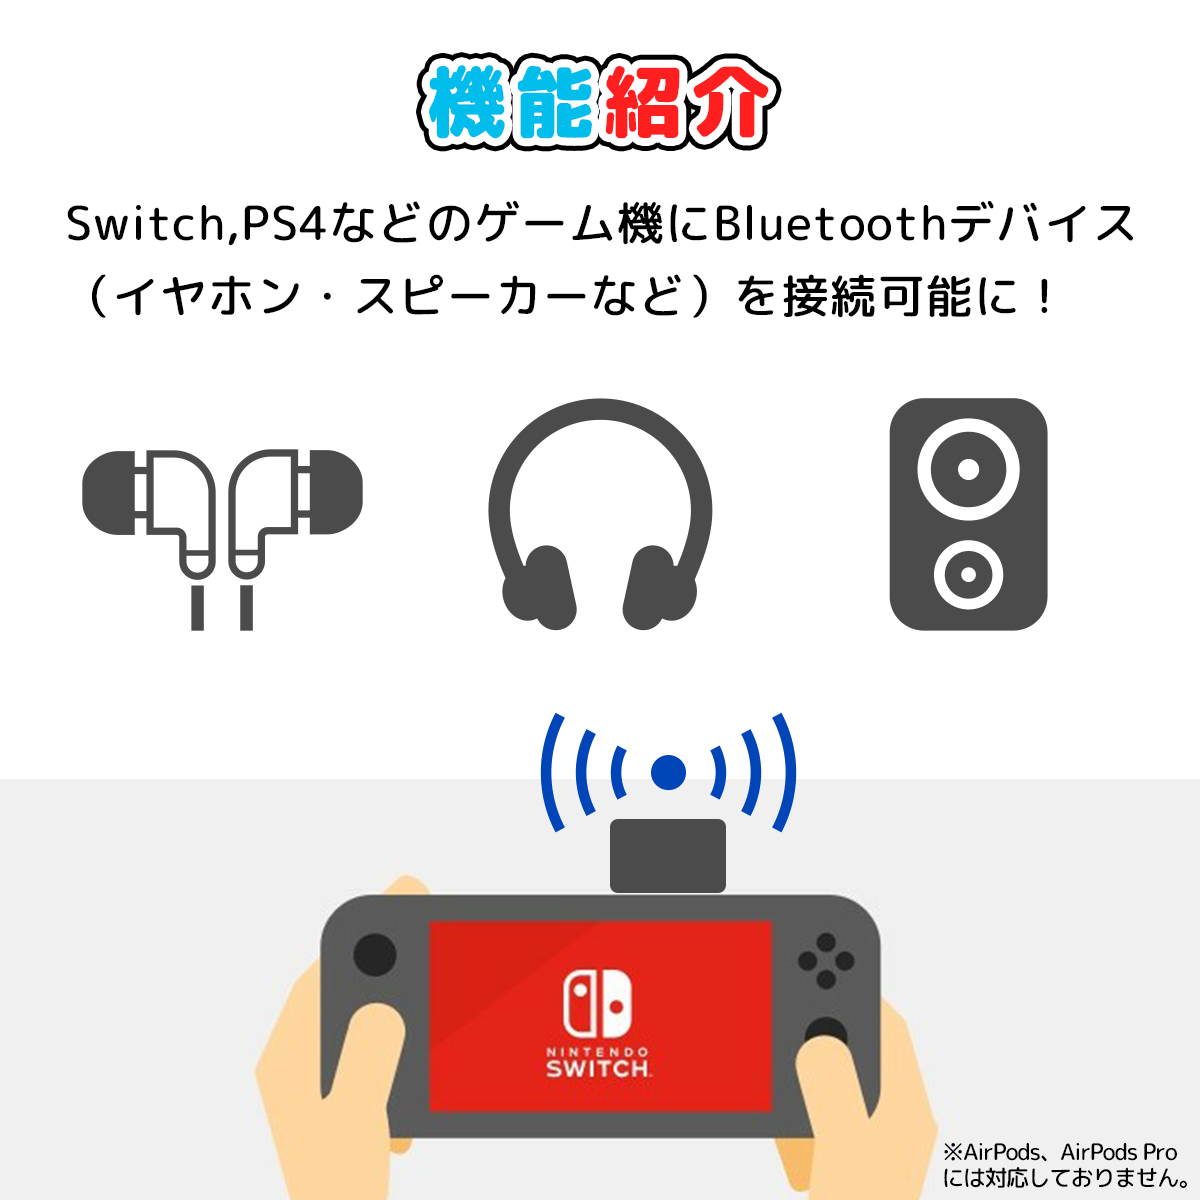 楽天市場 Nintendo Switch Switch Lite スイッチ Ps4 対応 オーディオアダプター ワイヤレス ブルートゥース Bluetooth ワイヤレスレシーバー ヘッドホン イヤホン スピーカー 送料無料 マラソン 2倍 My Way Smart 楽天市場店